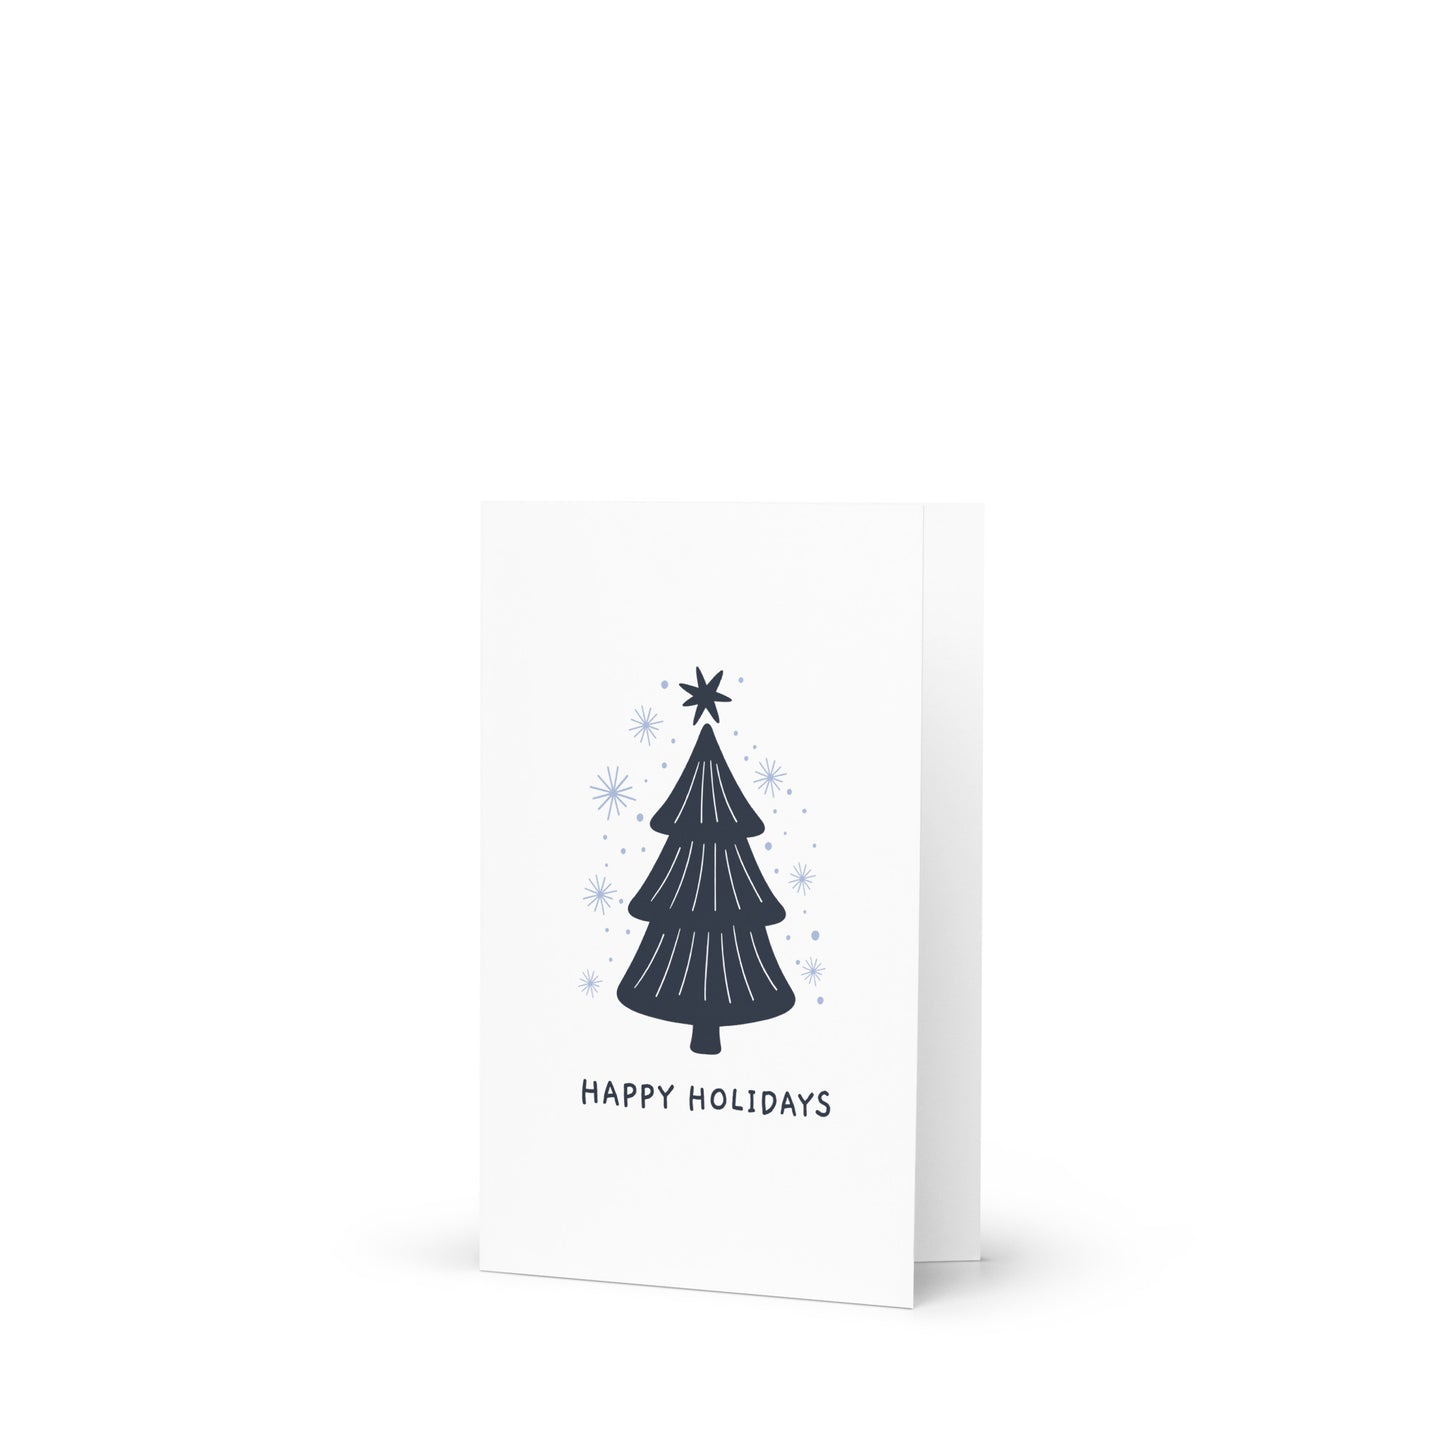 Happy Holidays - Stylish Christmas Card with Elegant Minimalism